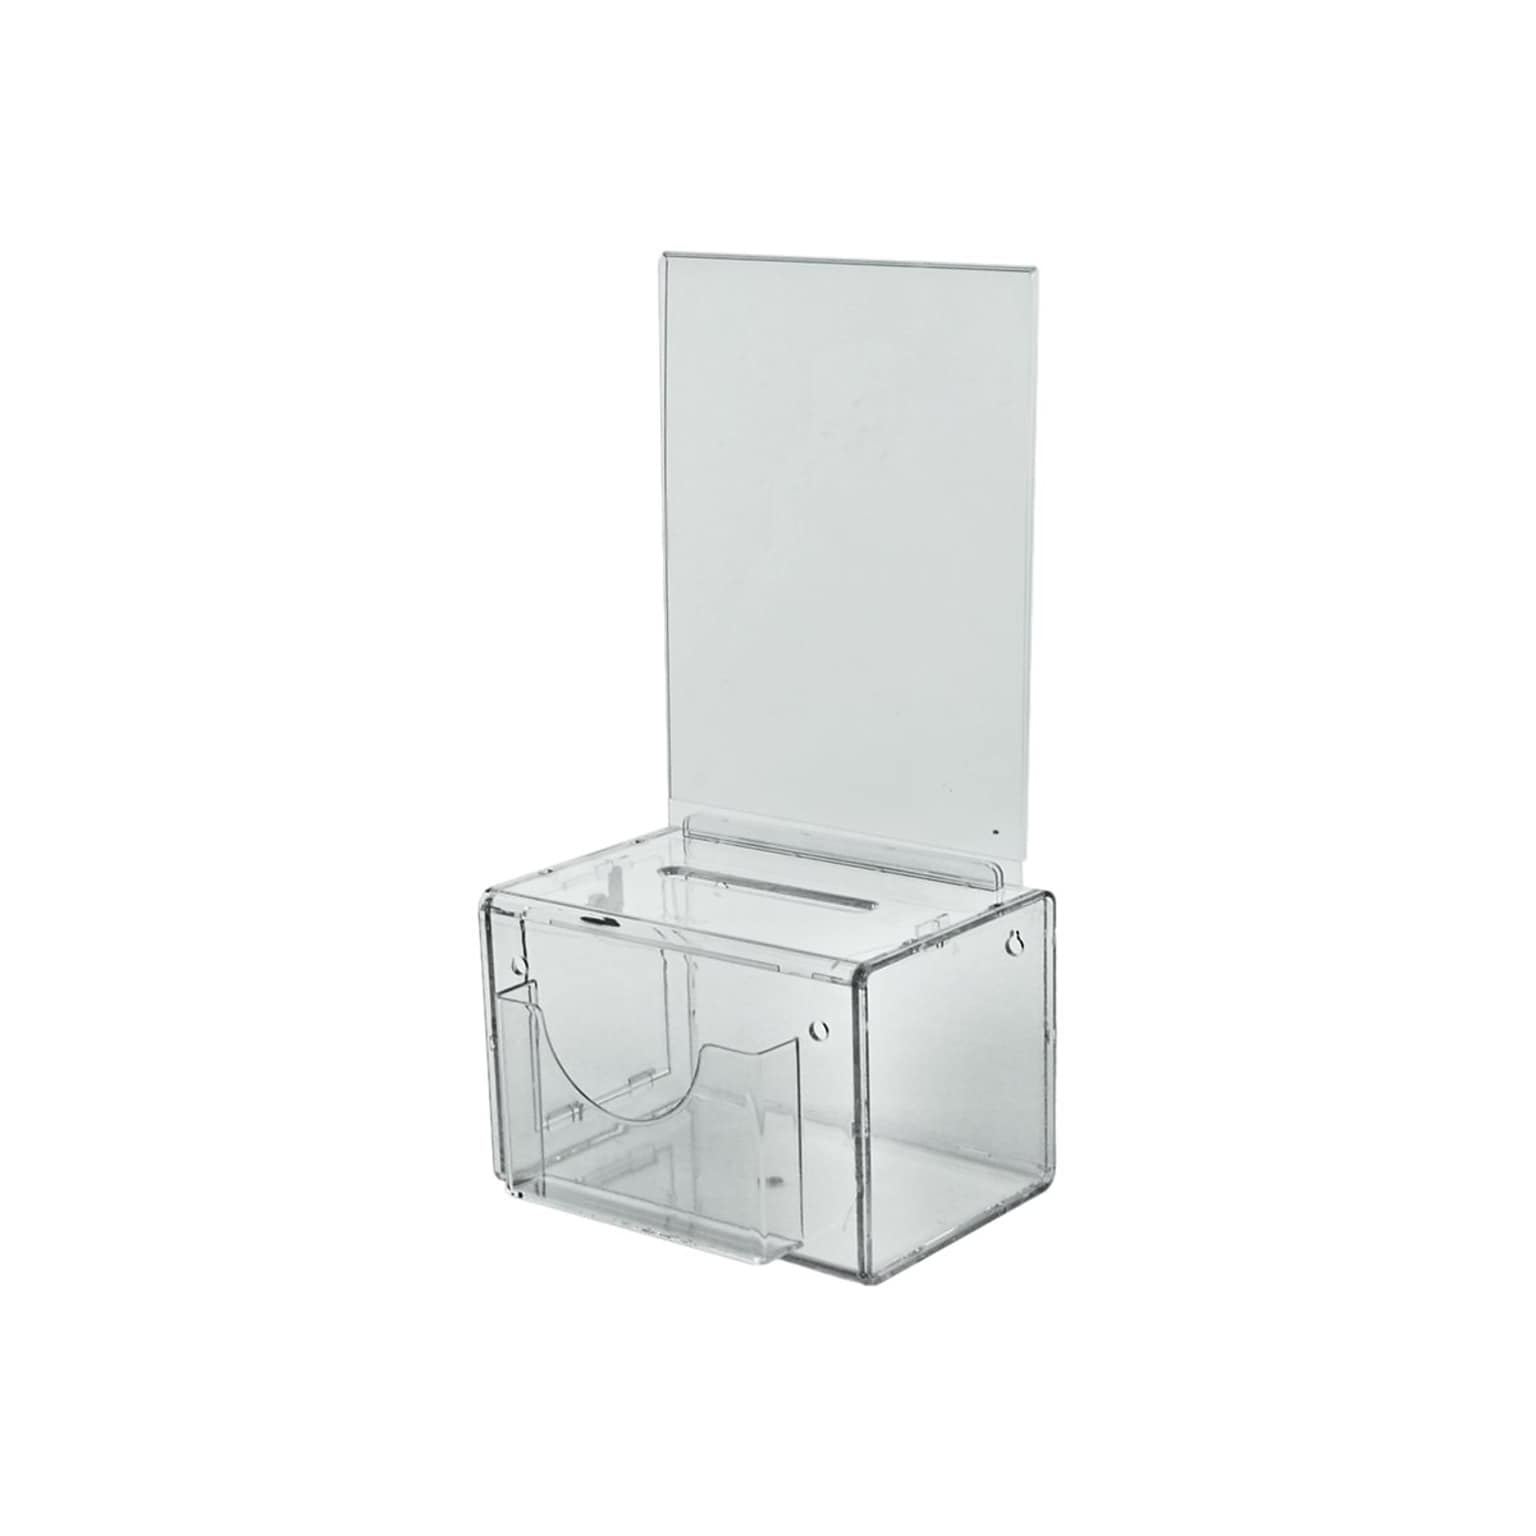 Azar Locking Plastic Suggestion Box, Clear (206388)